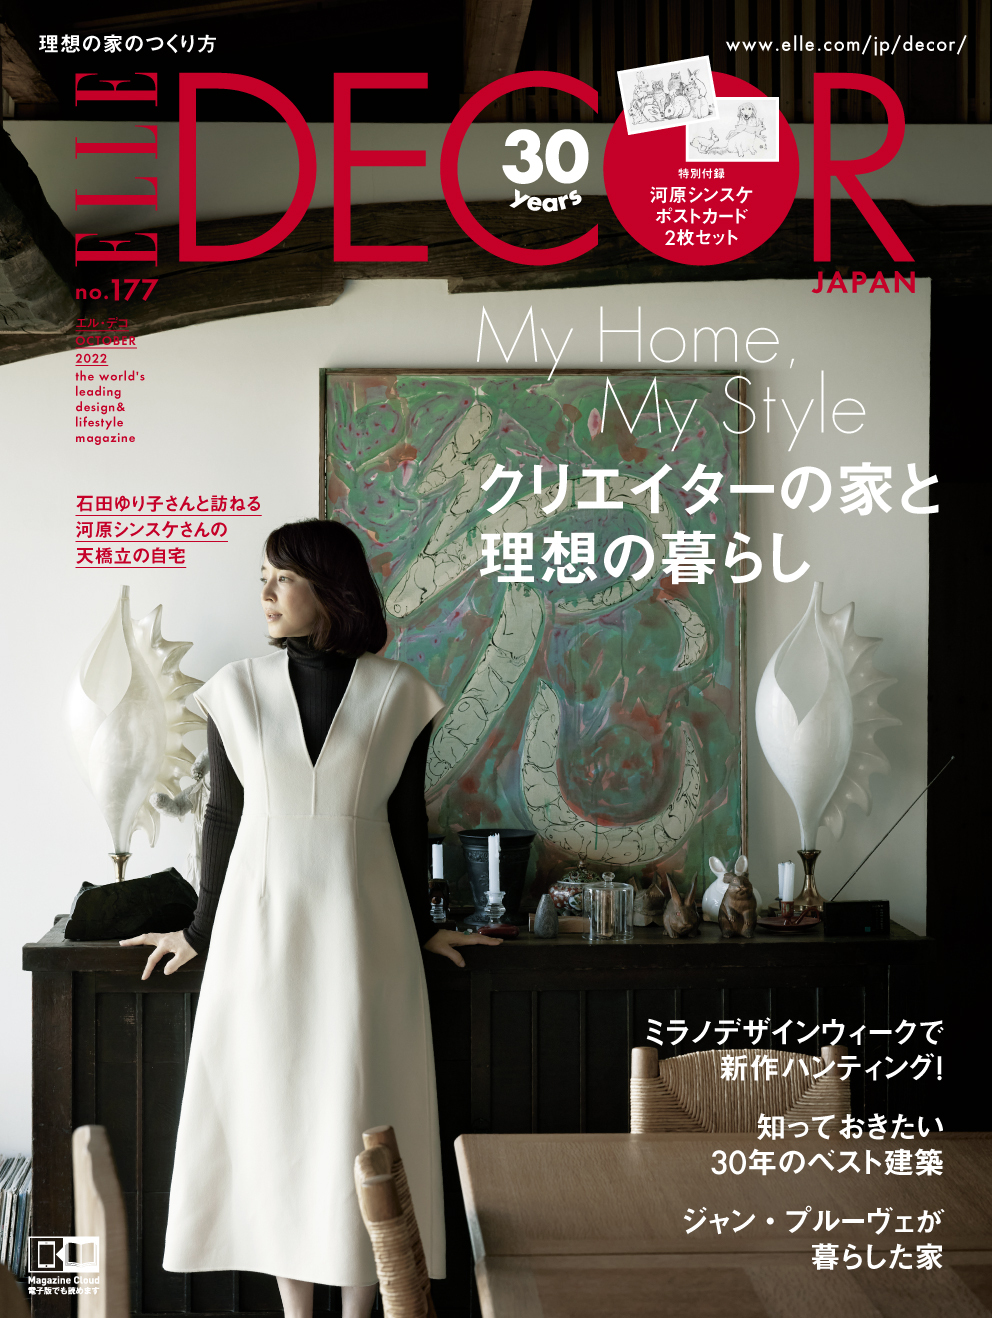 『エル・デコ』創刊30周年企画に石田ゆり子が登場